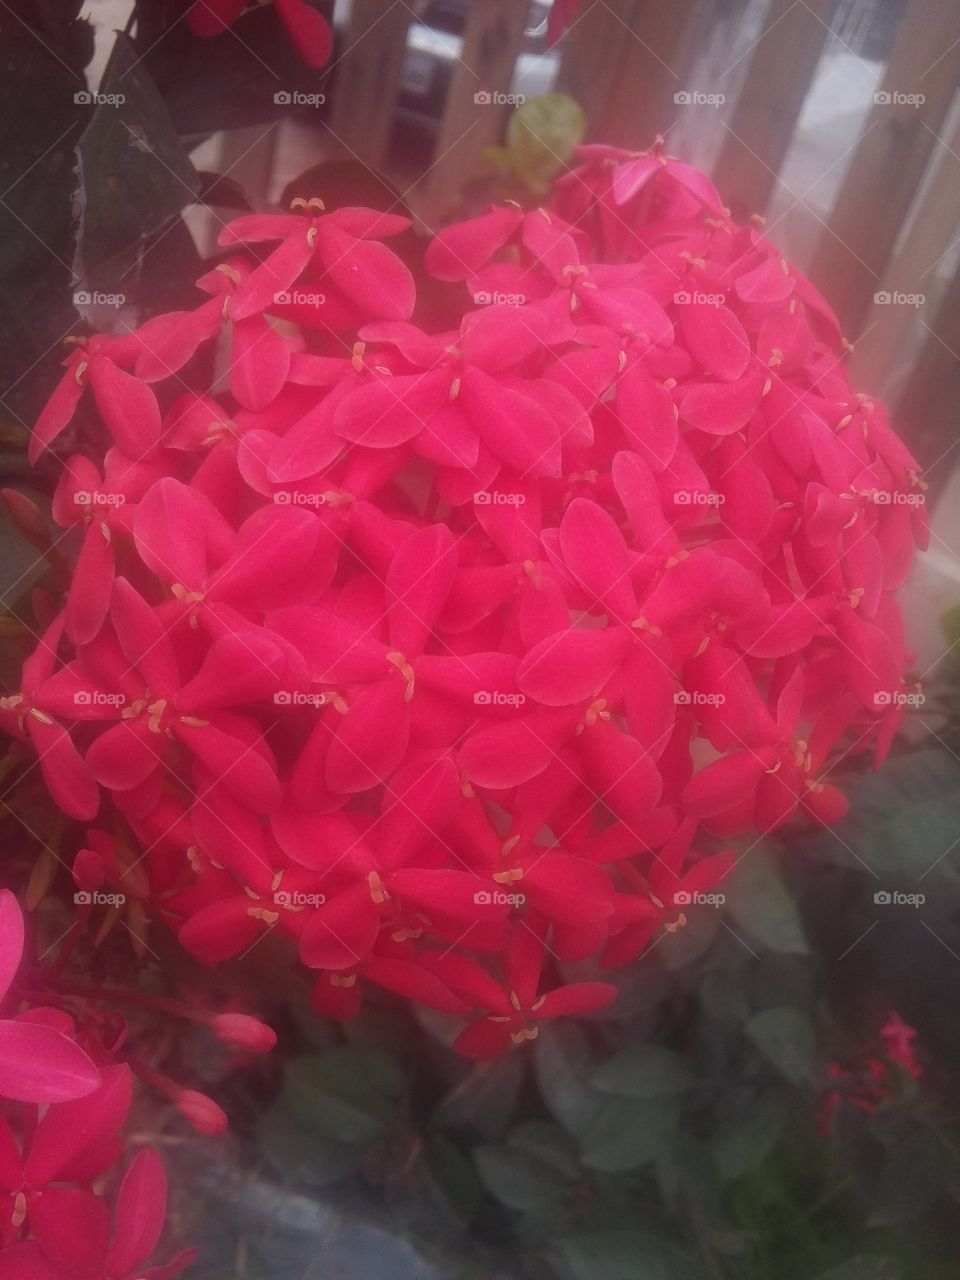 vermelho lembra amor, amor lembra paixão , mas flores no seu coração.